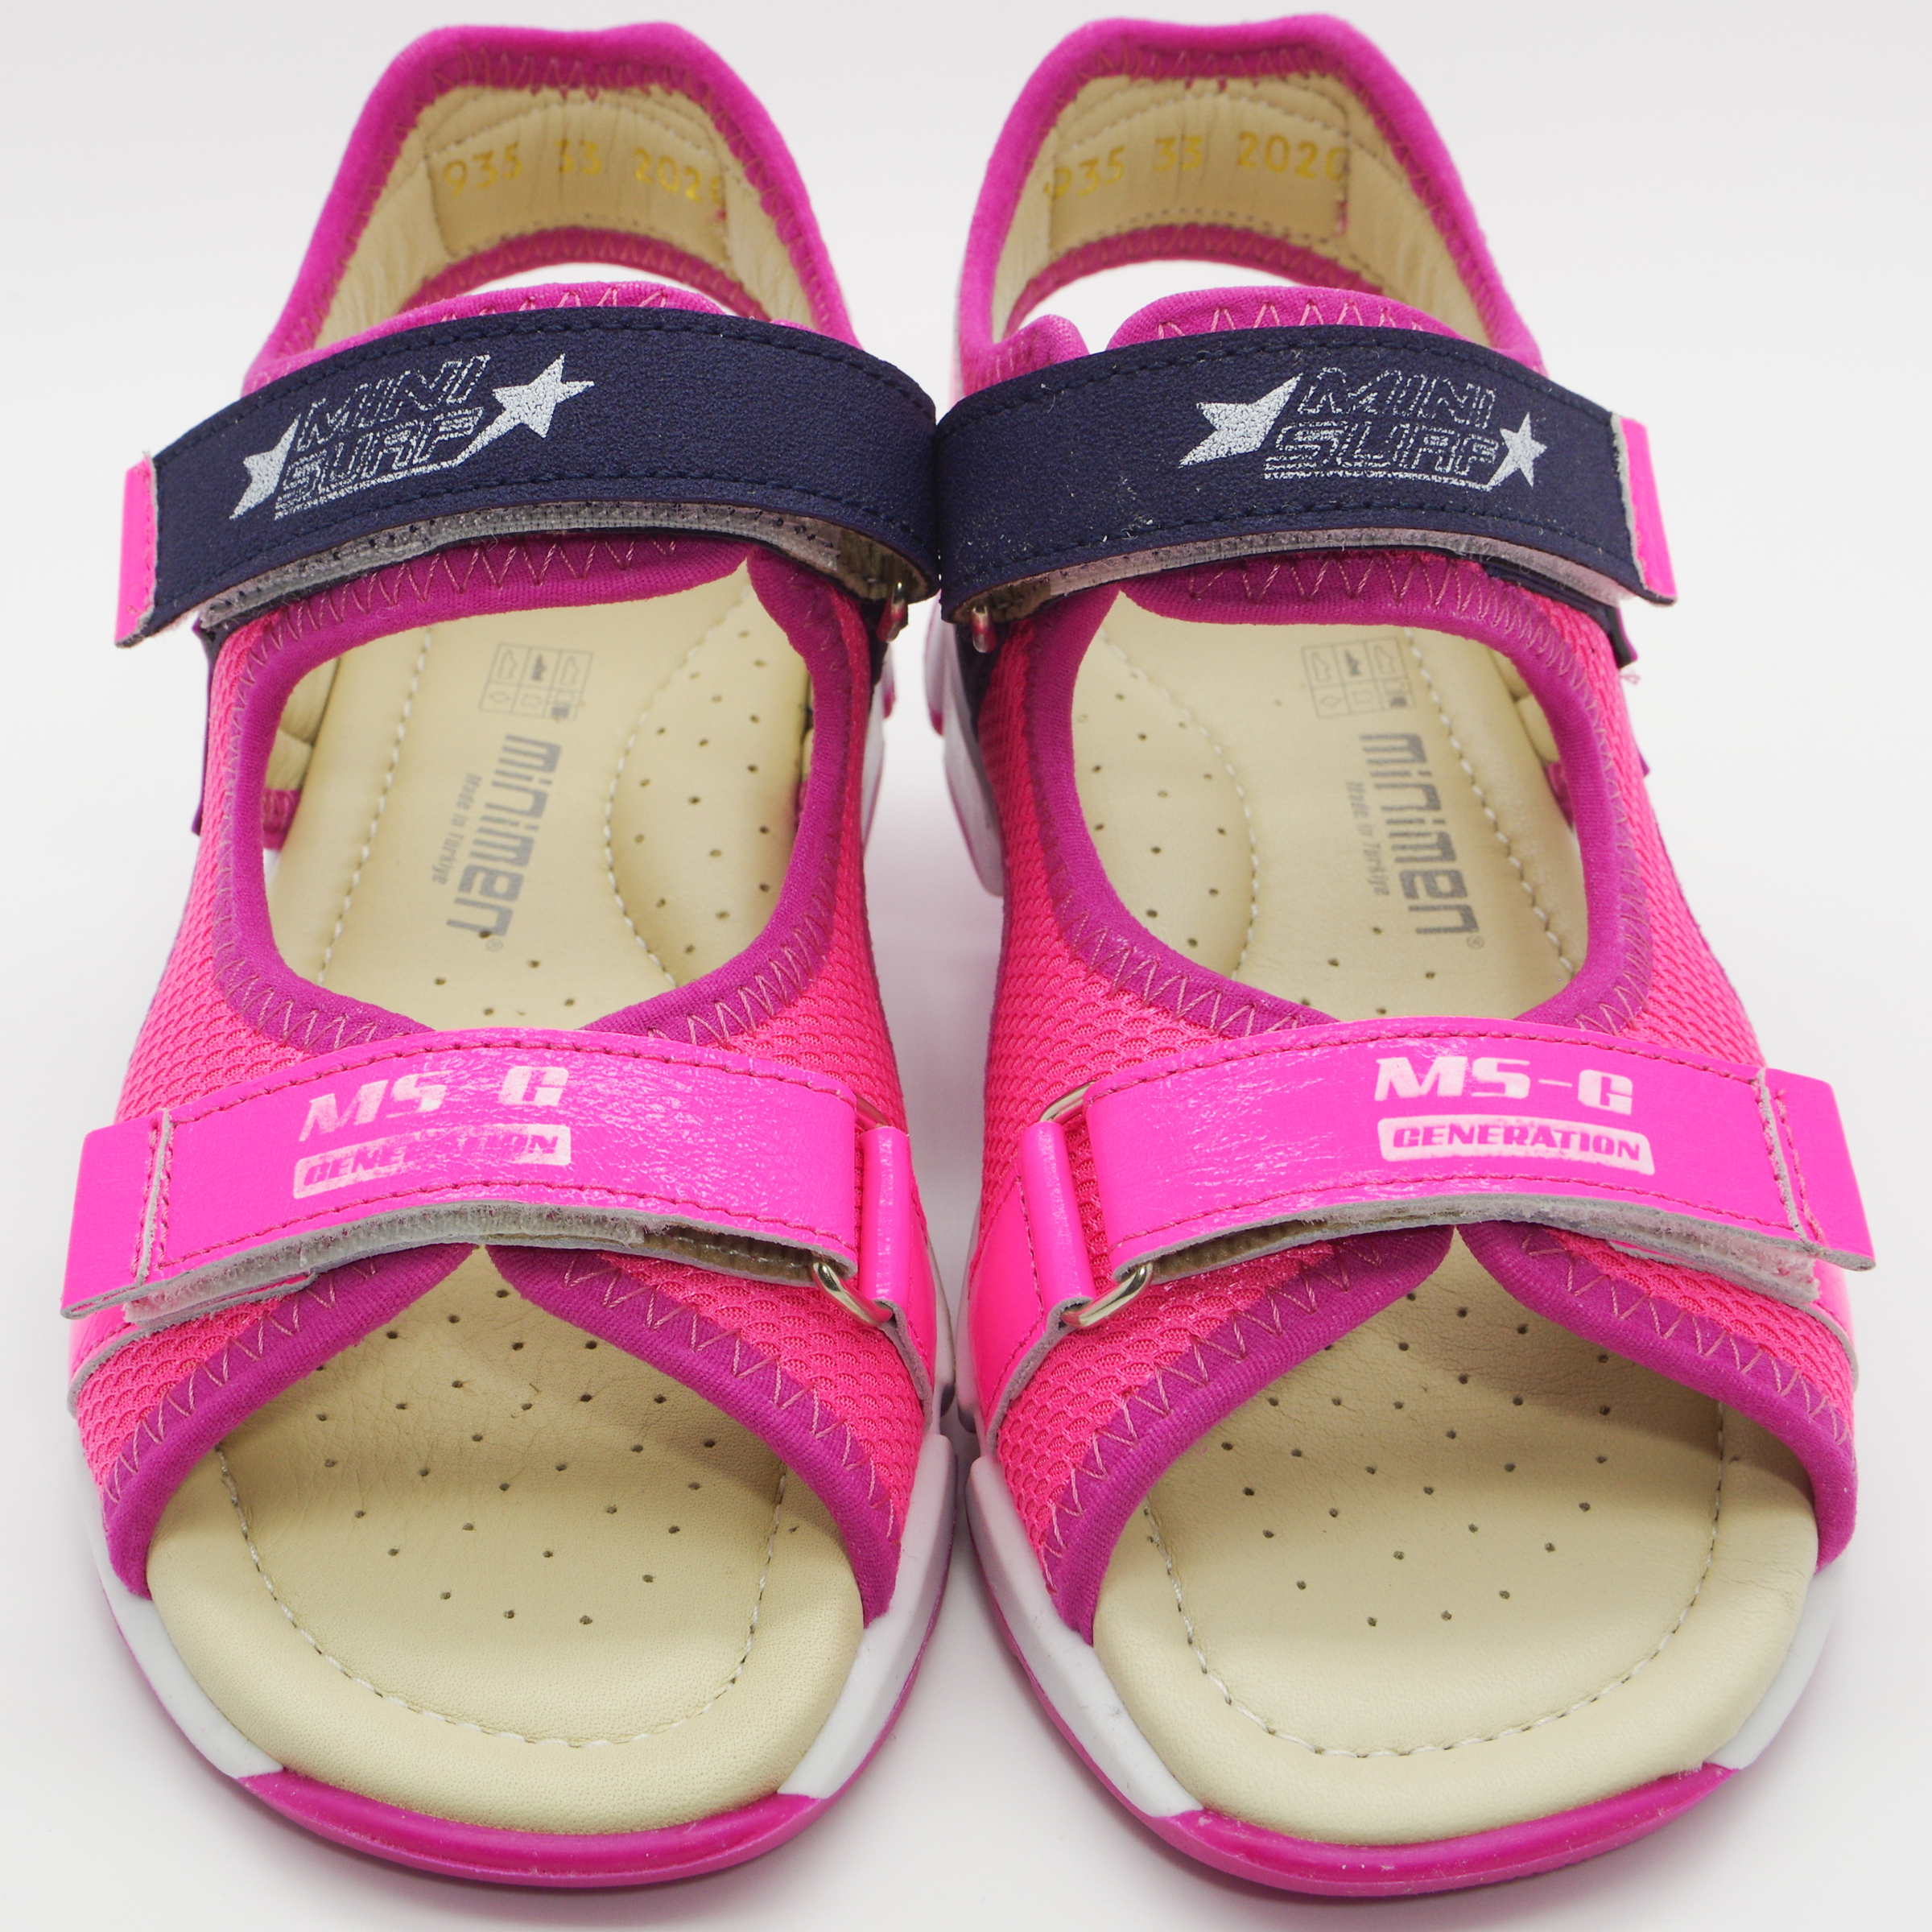 Спортивные босоножки (2098) материал Нубук, цвет Розовый  для девочки 31-36 размеры – Sole Kids. Фото 2